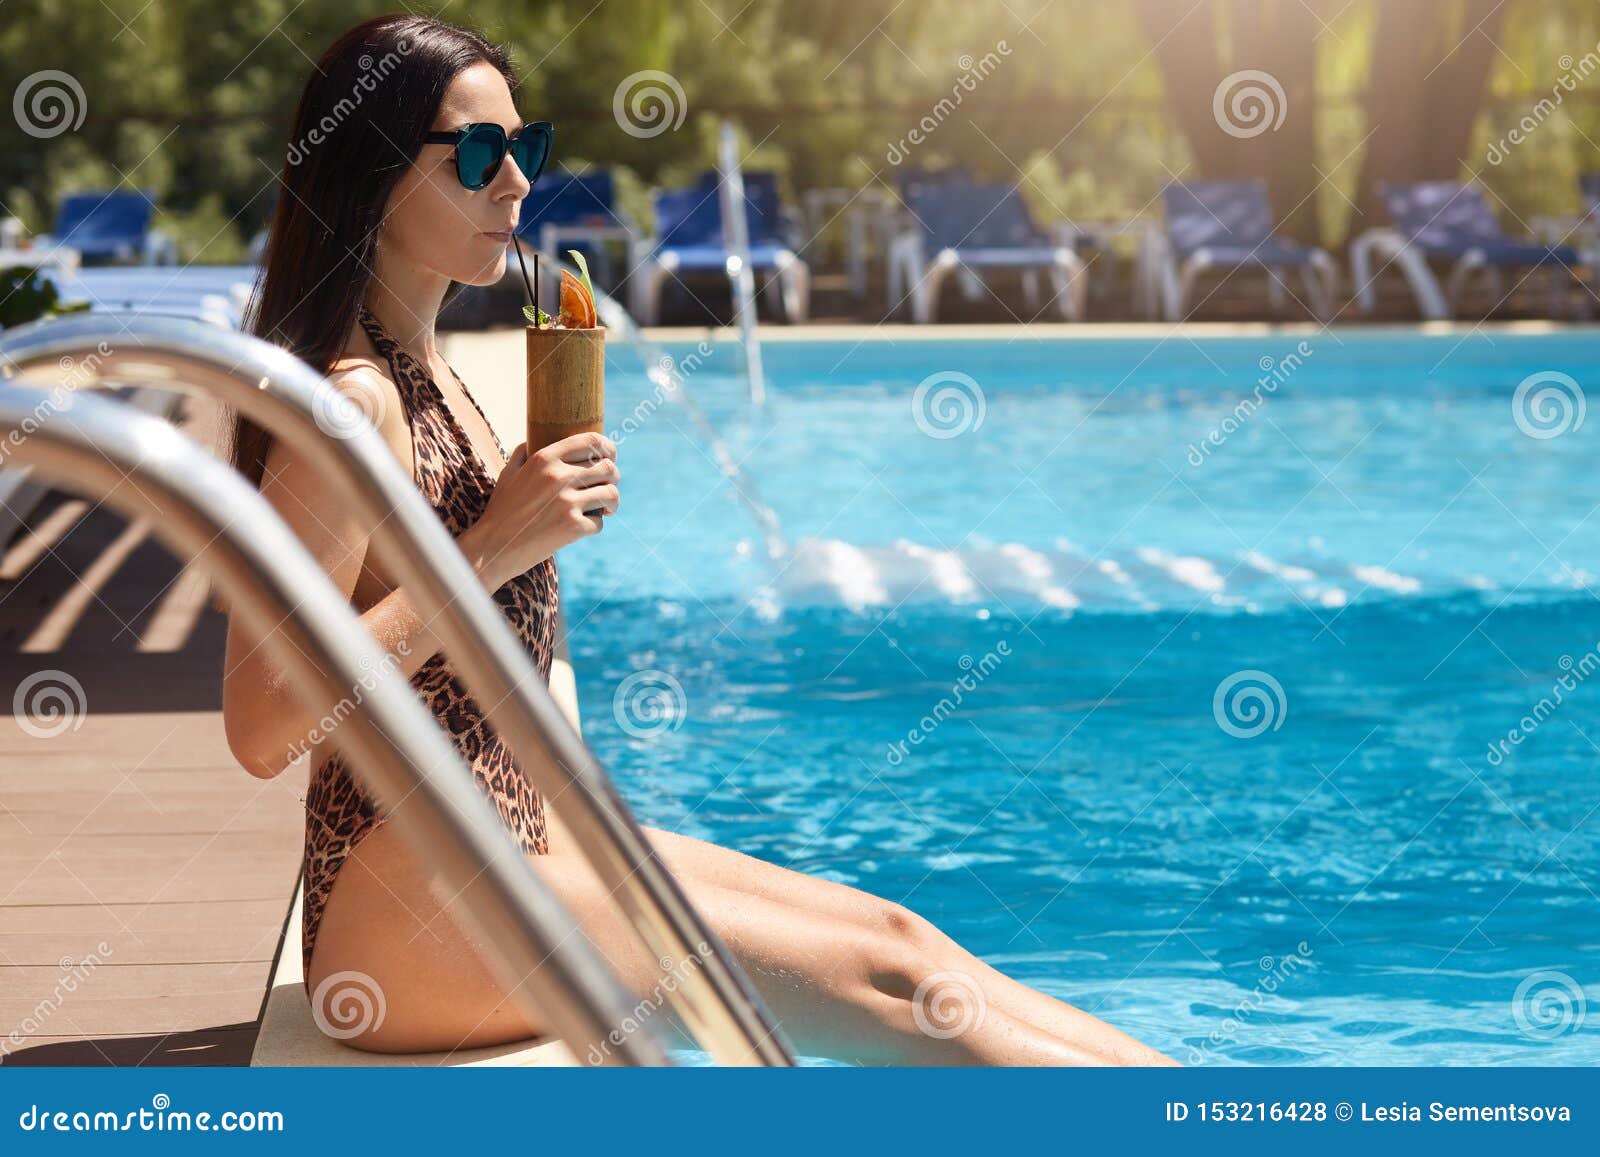 Mujer Con Traje De Baño Y Gafas De Natación Sentada En La Piscina